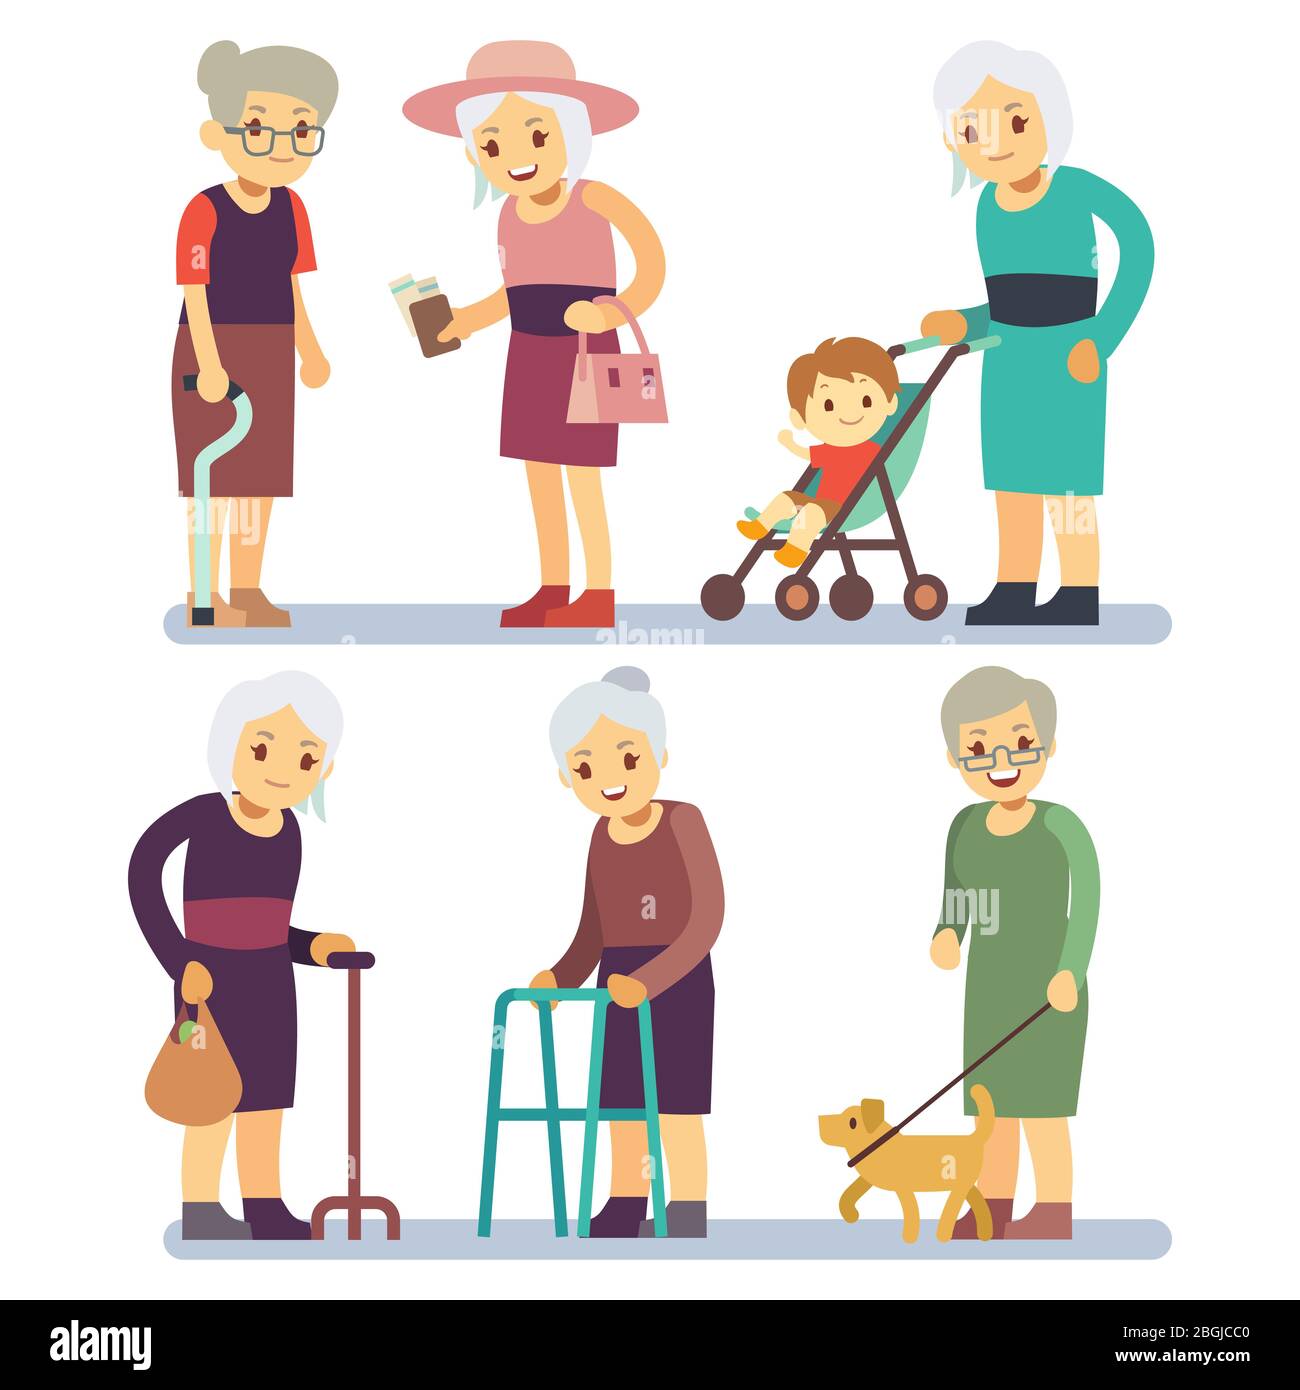 Alte Frauen Cartoon-Charakter gesetzt. Ältere Damen in unterschiedlicher Situation. Ältere Dame weiblich, Charakter mit Hund zu Fuß, verschiedene Rentner Großmutter Illustration Stock Vektor